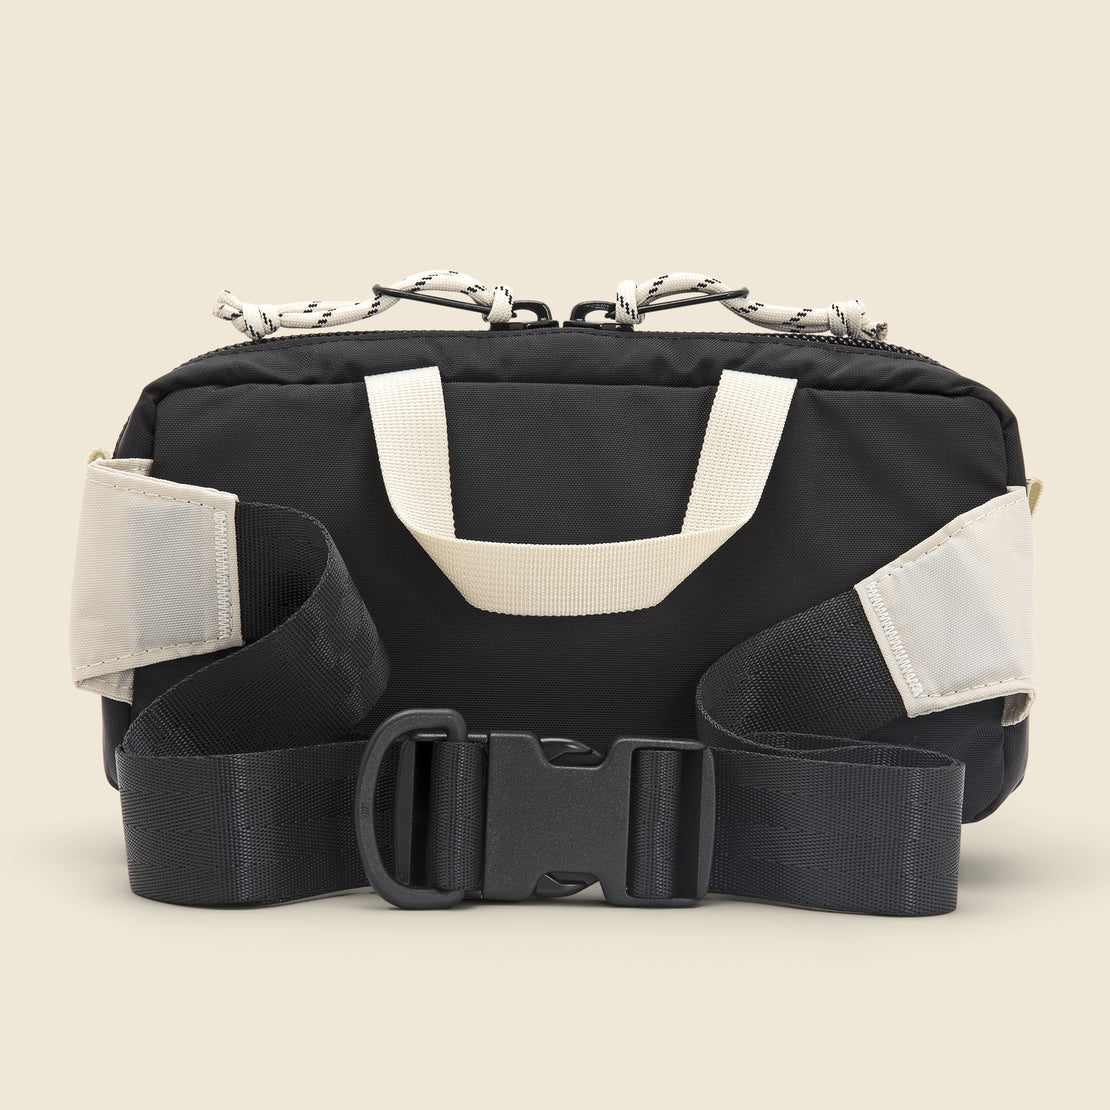 Mini Quick Pack - Bone White/Black - Topo Designs - STAG Provisions - Accessories - Bags / Luggage